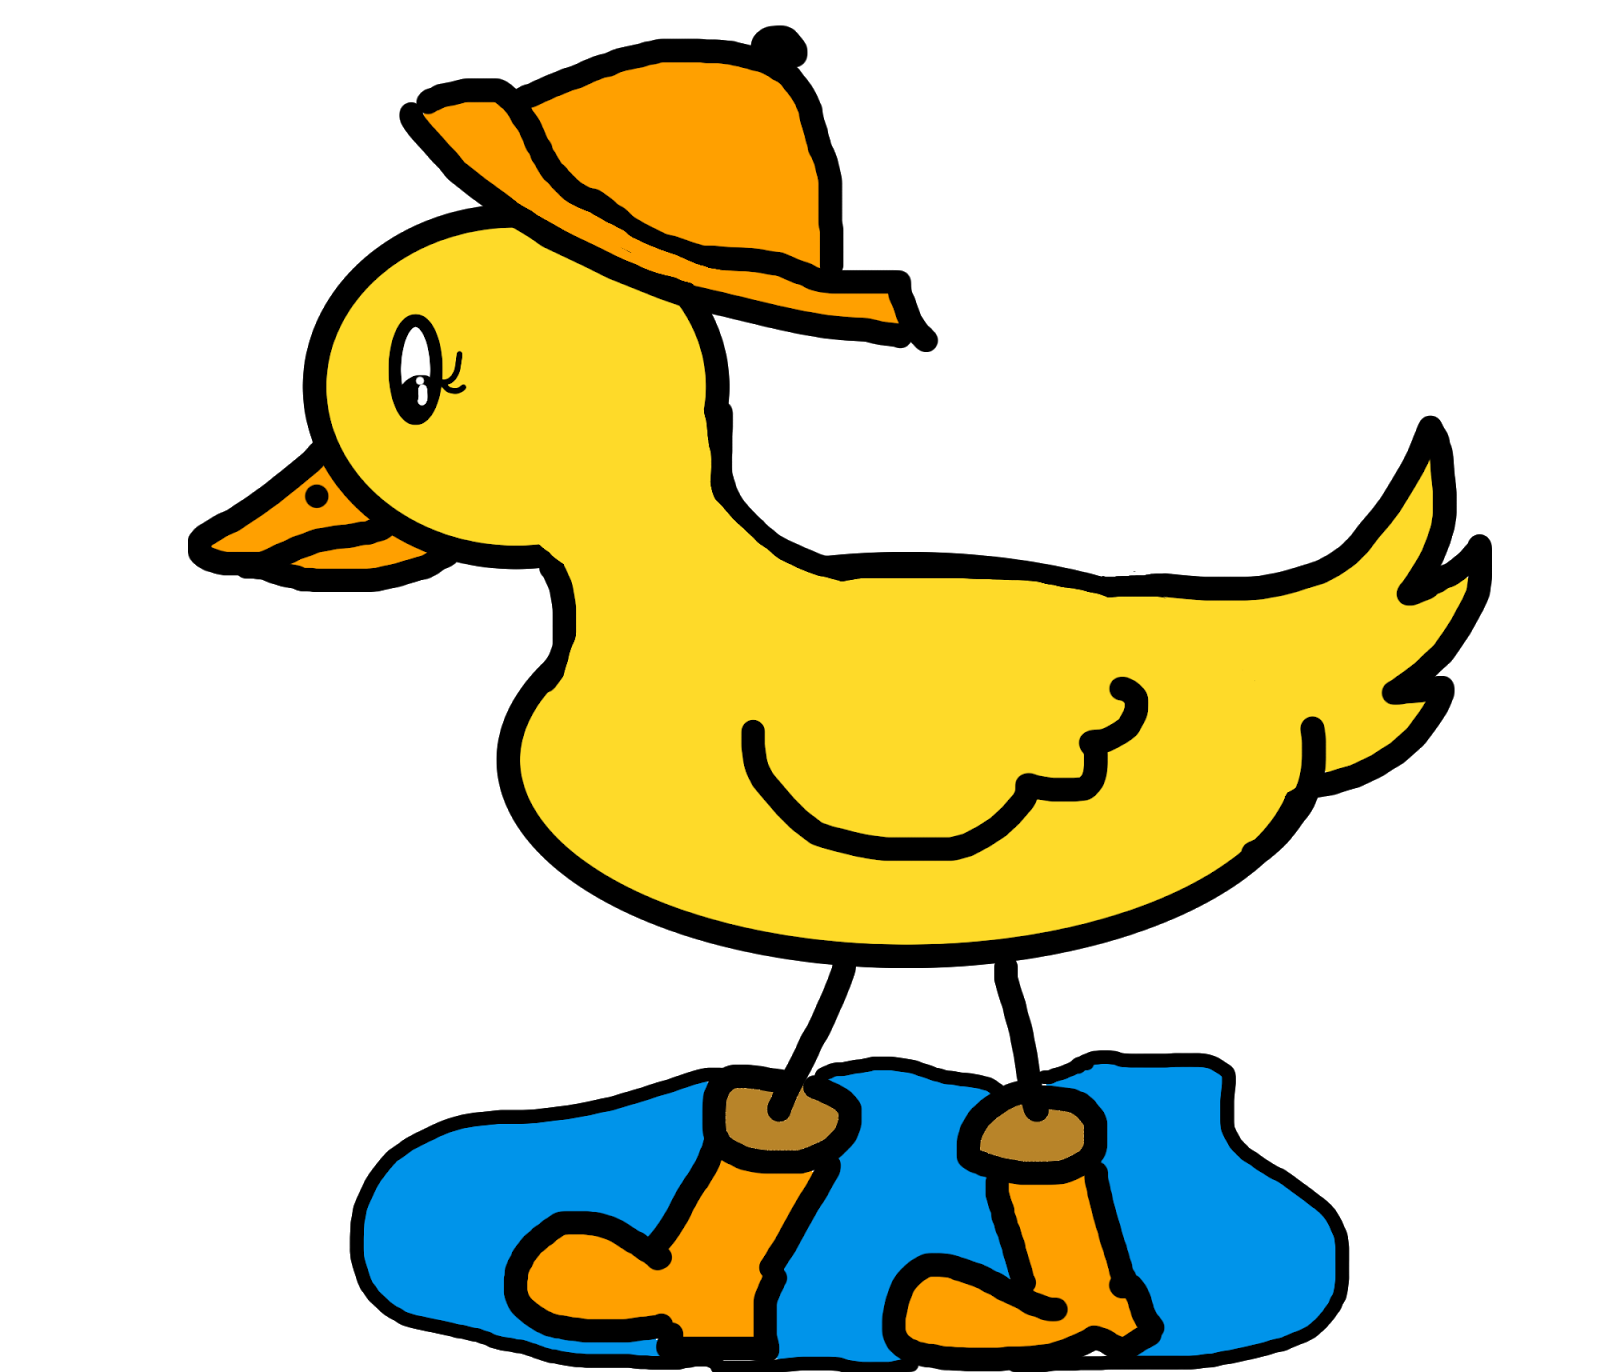 Wet duck